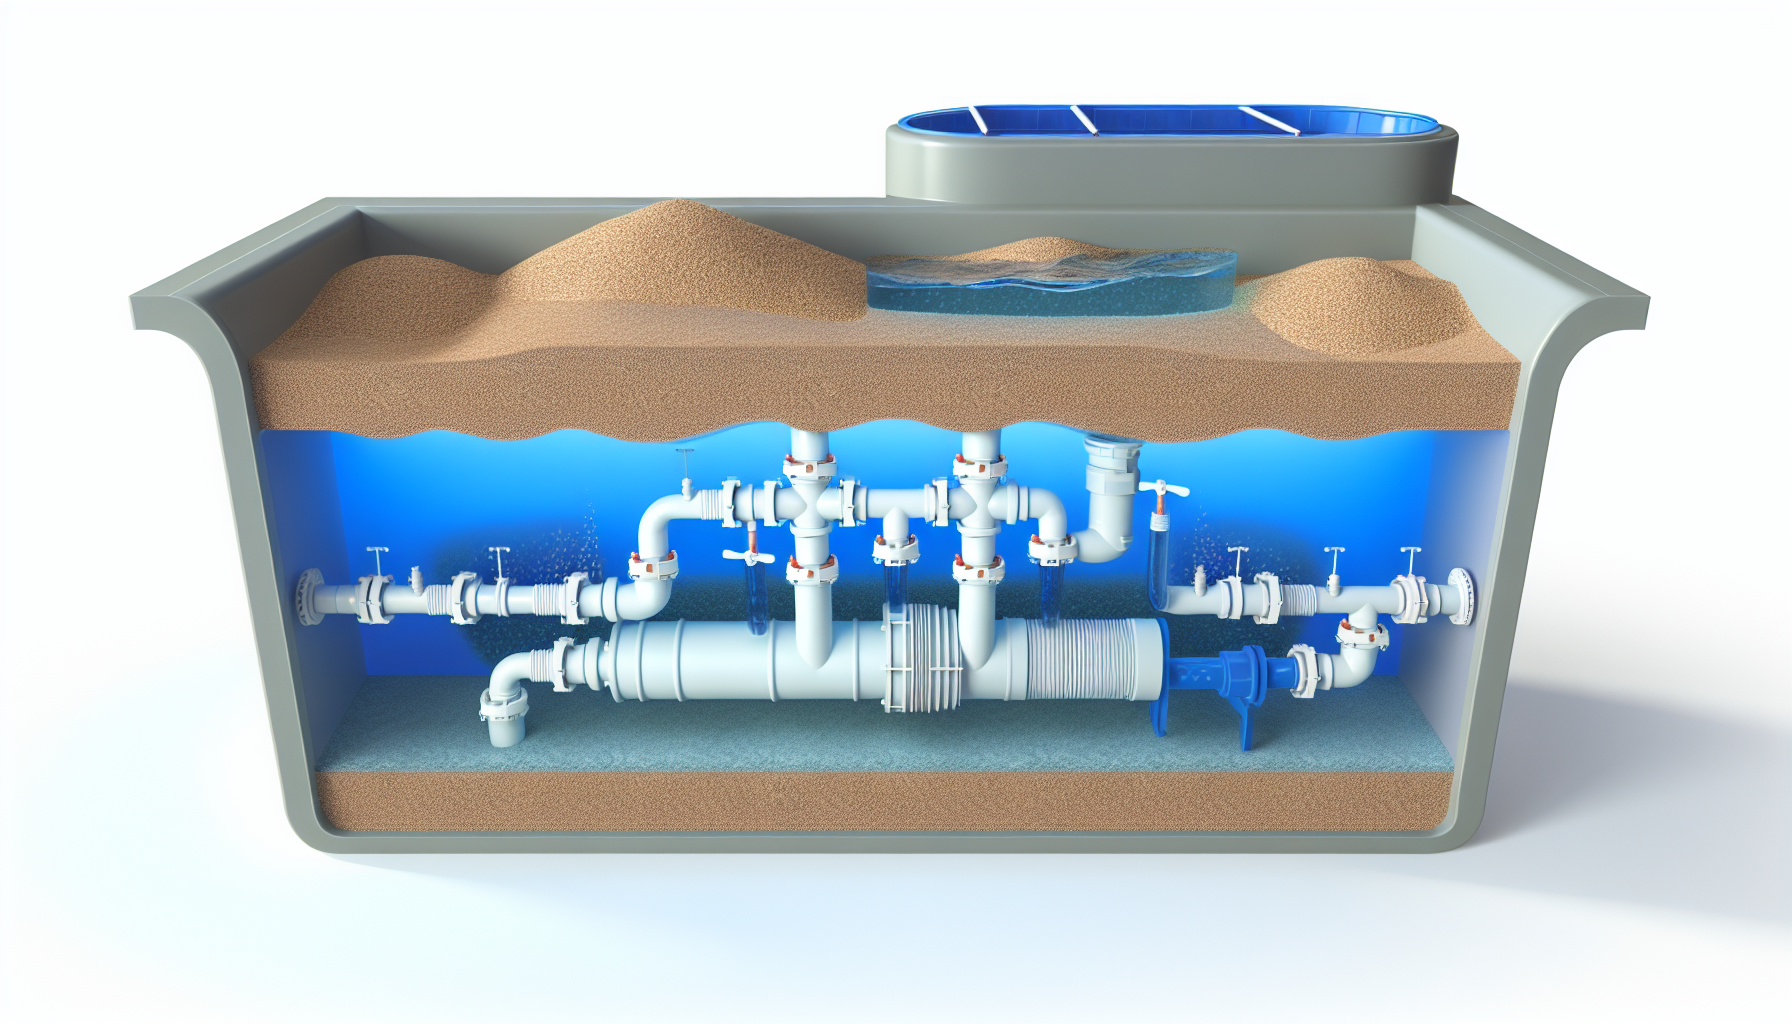 3D-Illustration eines Schnittmodells eines unterirdischen Pools mit Rohrleitungen und Filtersystem.